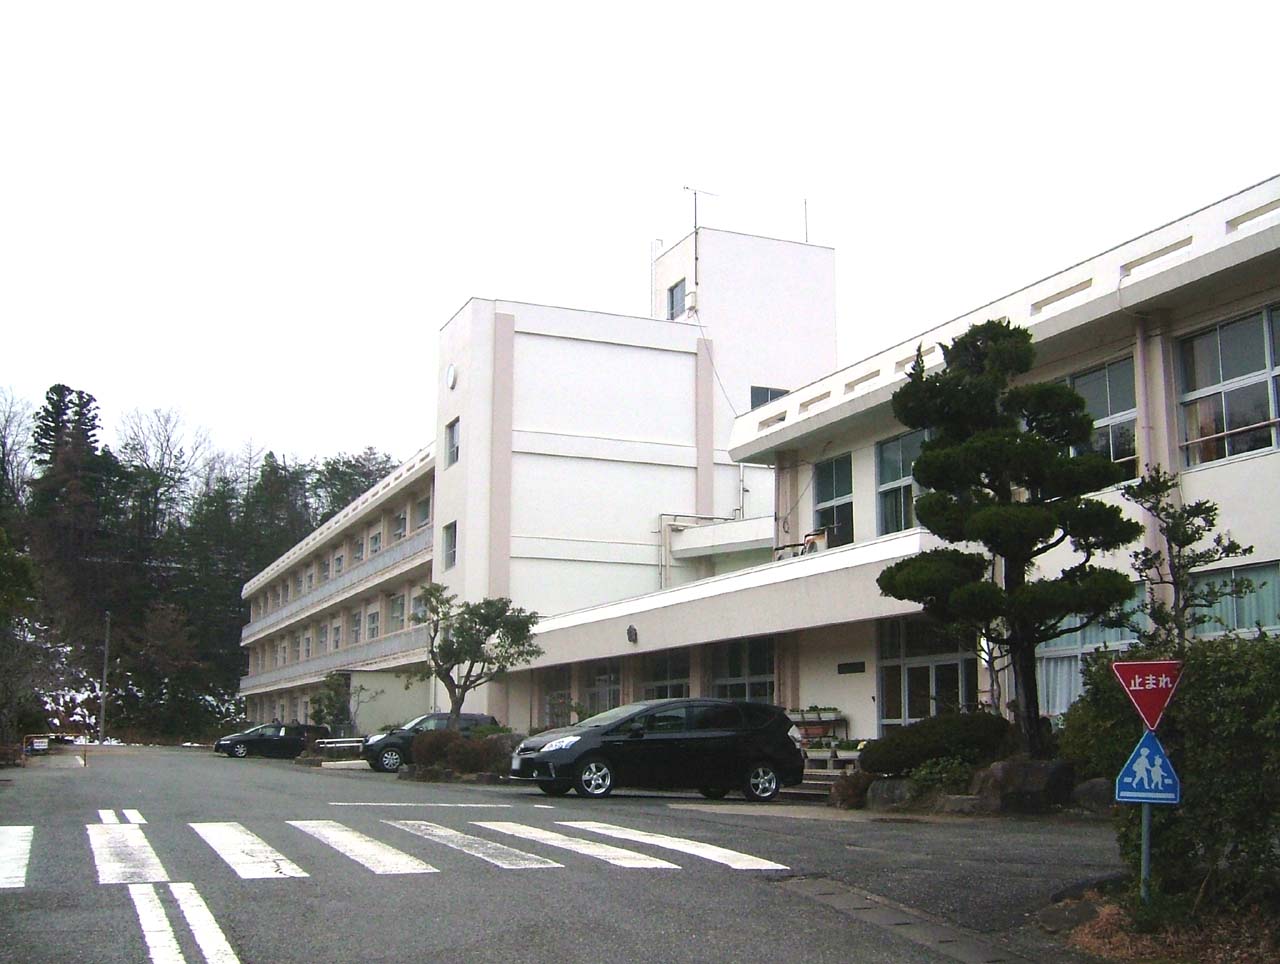 Primary school. Toyooka City Gosho to elementary school (elementary school) 930m